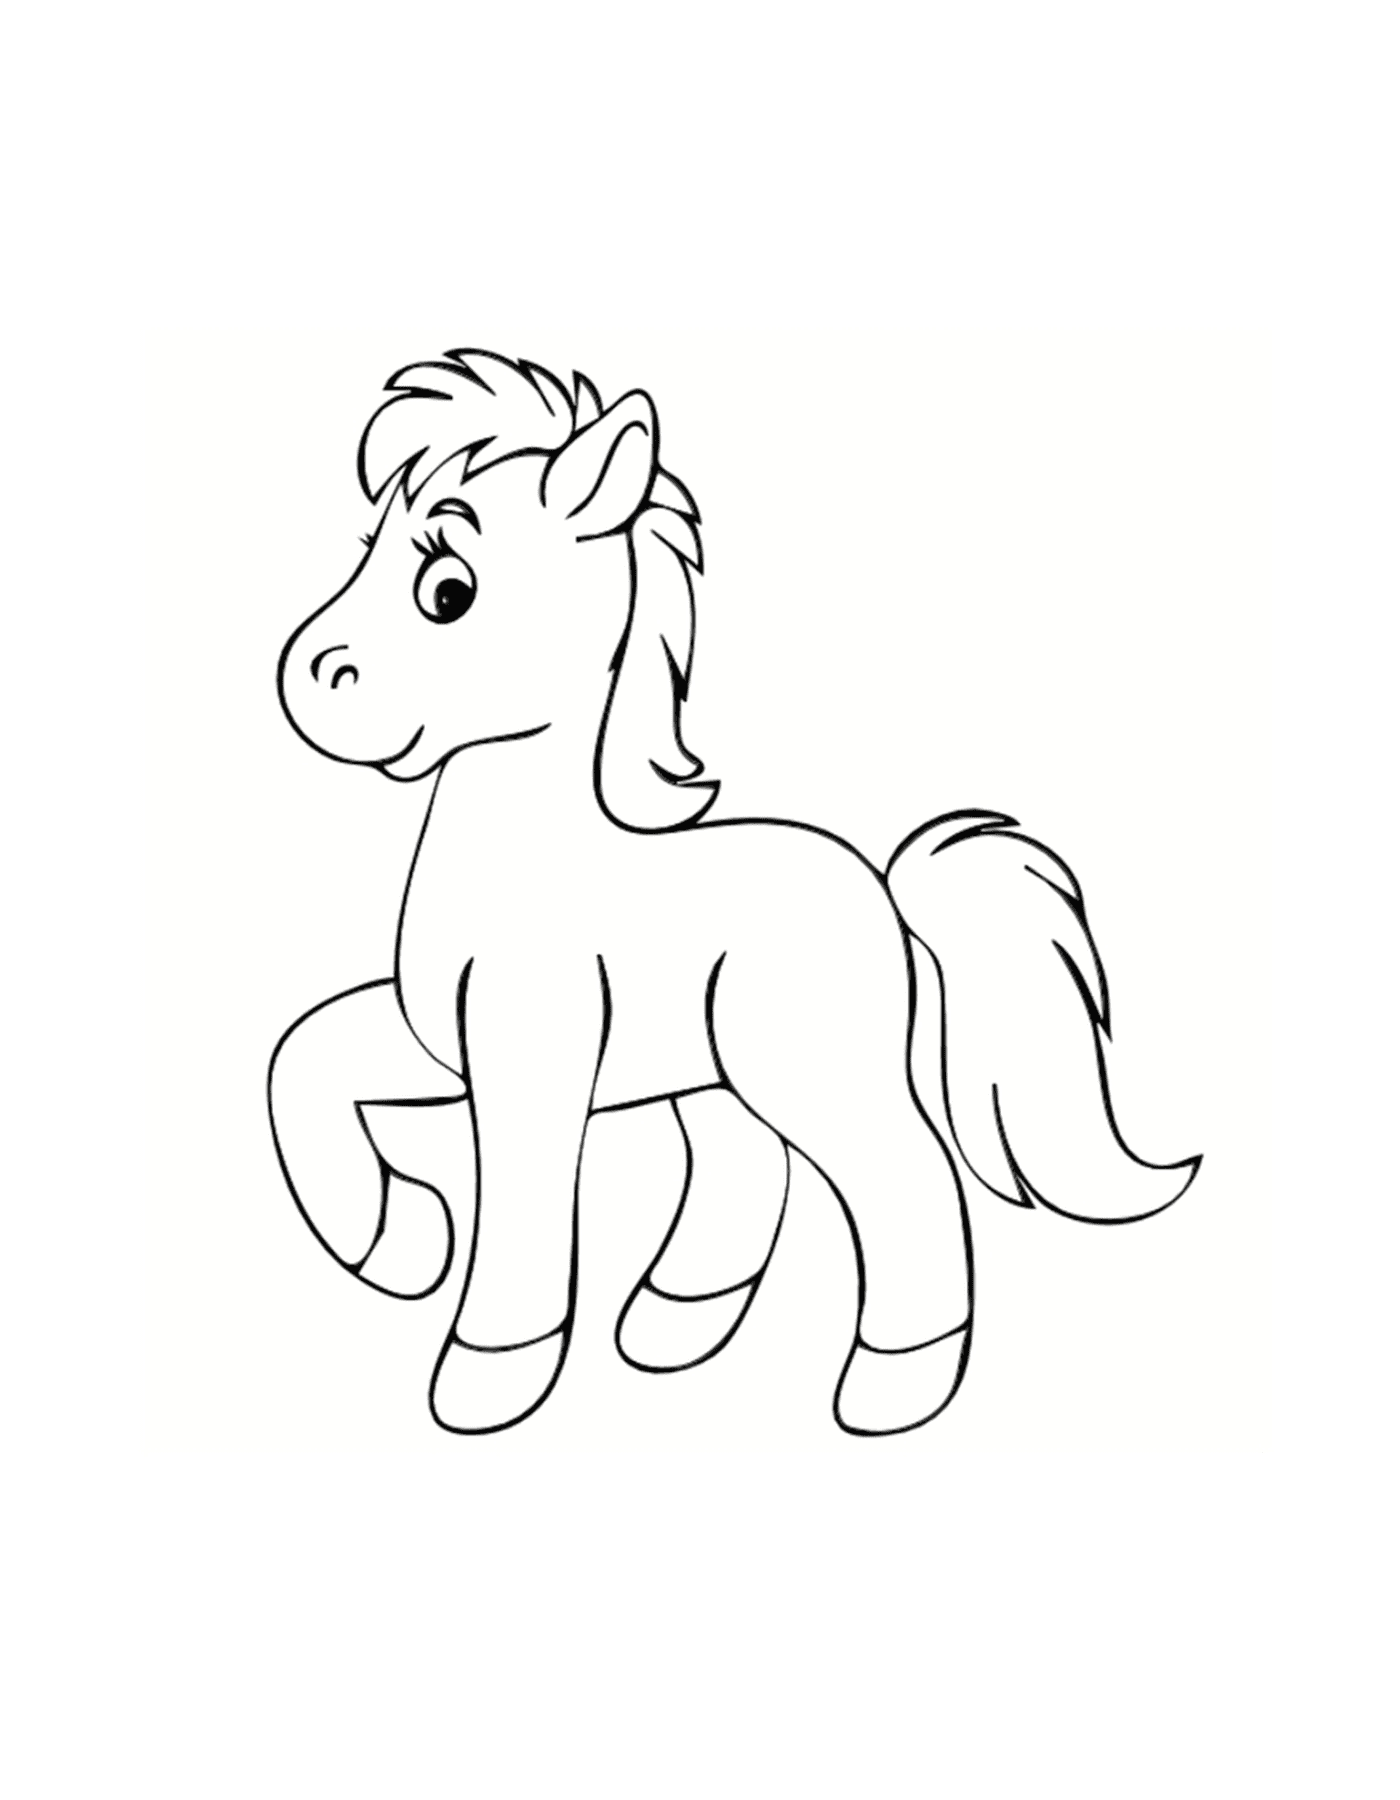  Pony, adorável cavalo em miniatura 